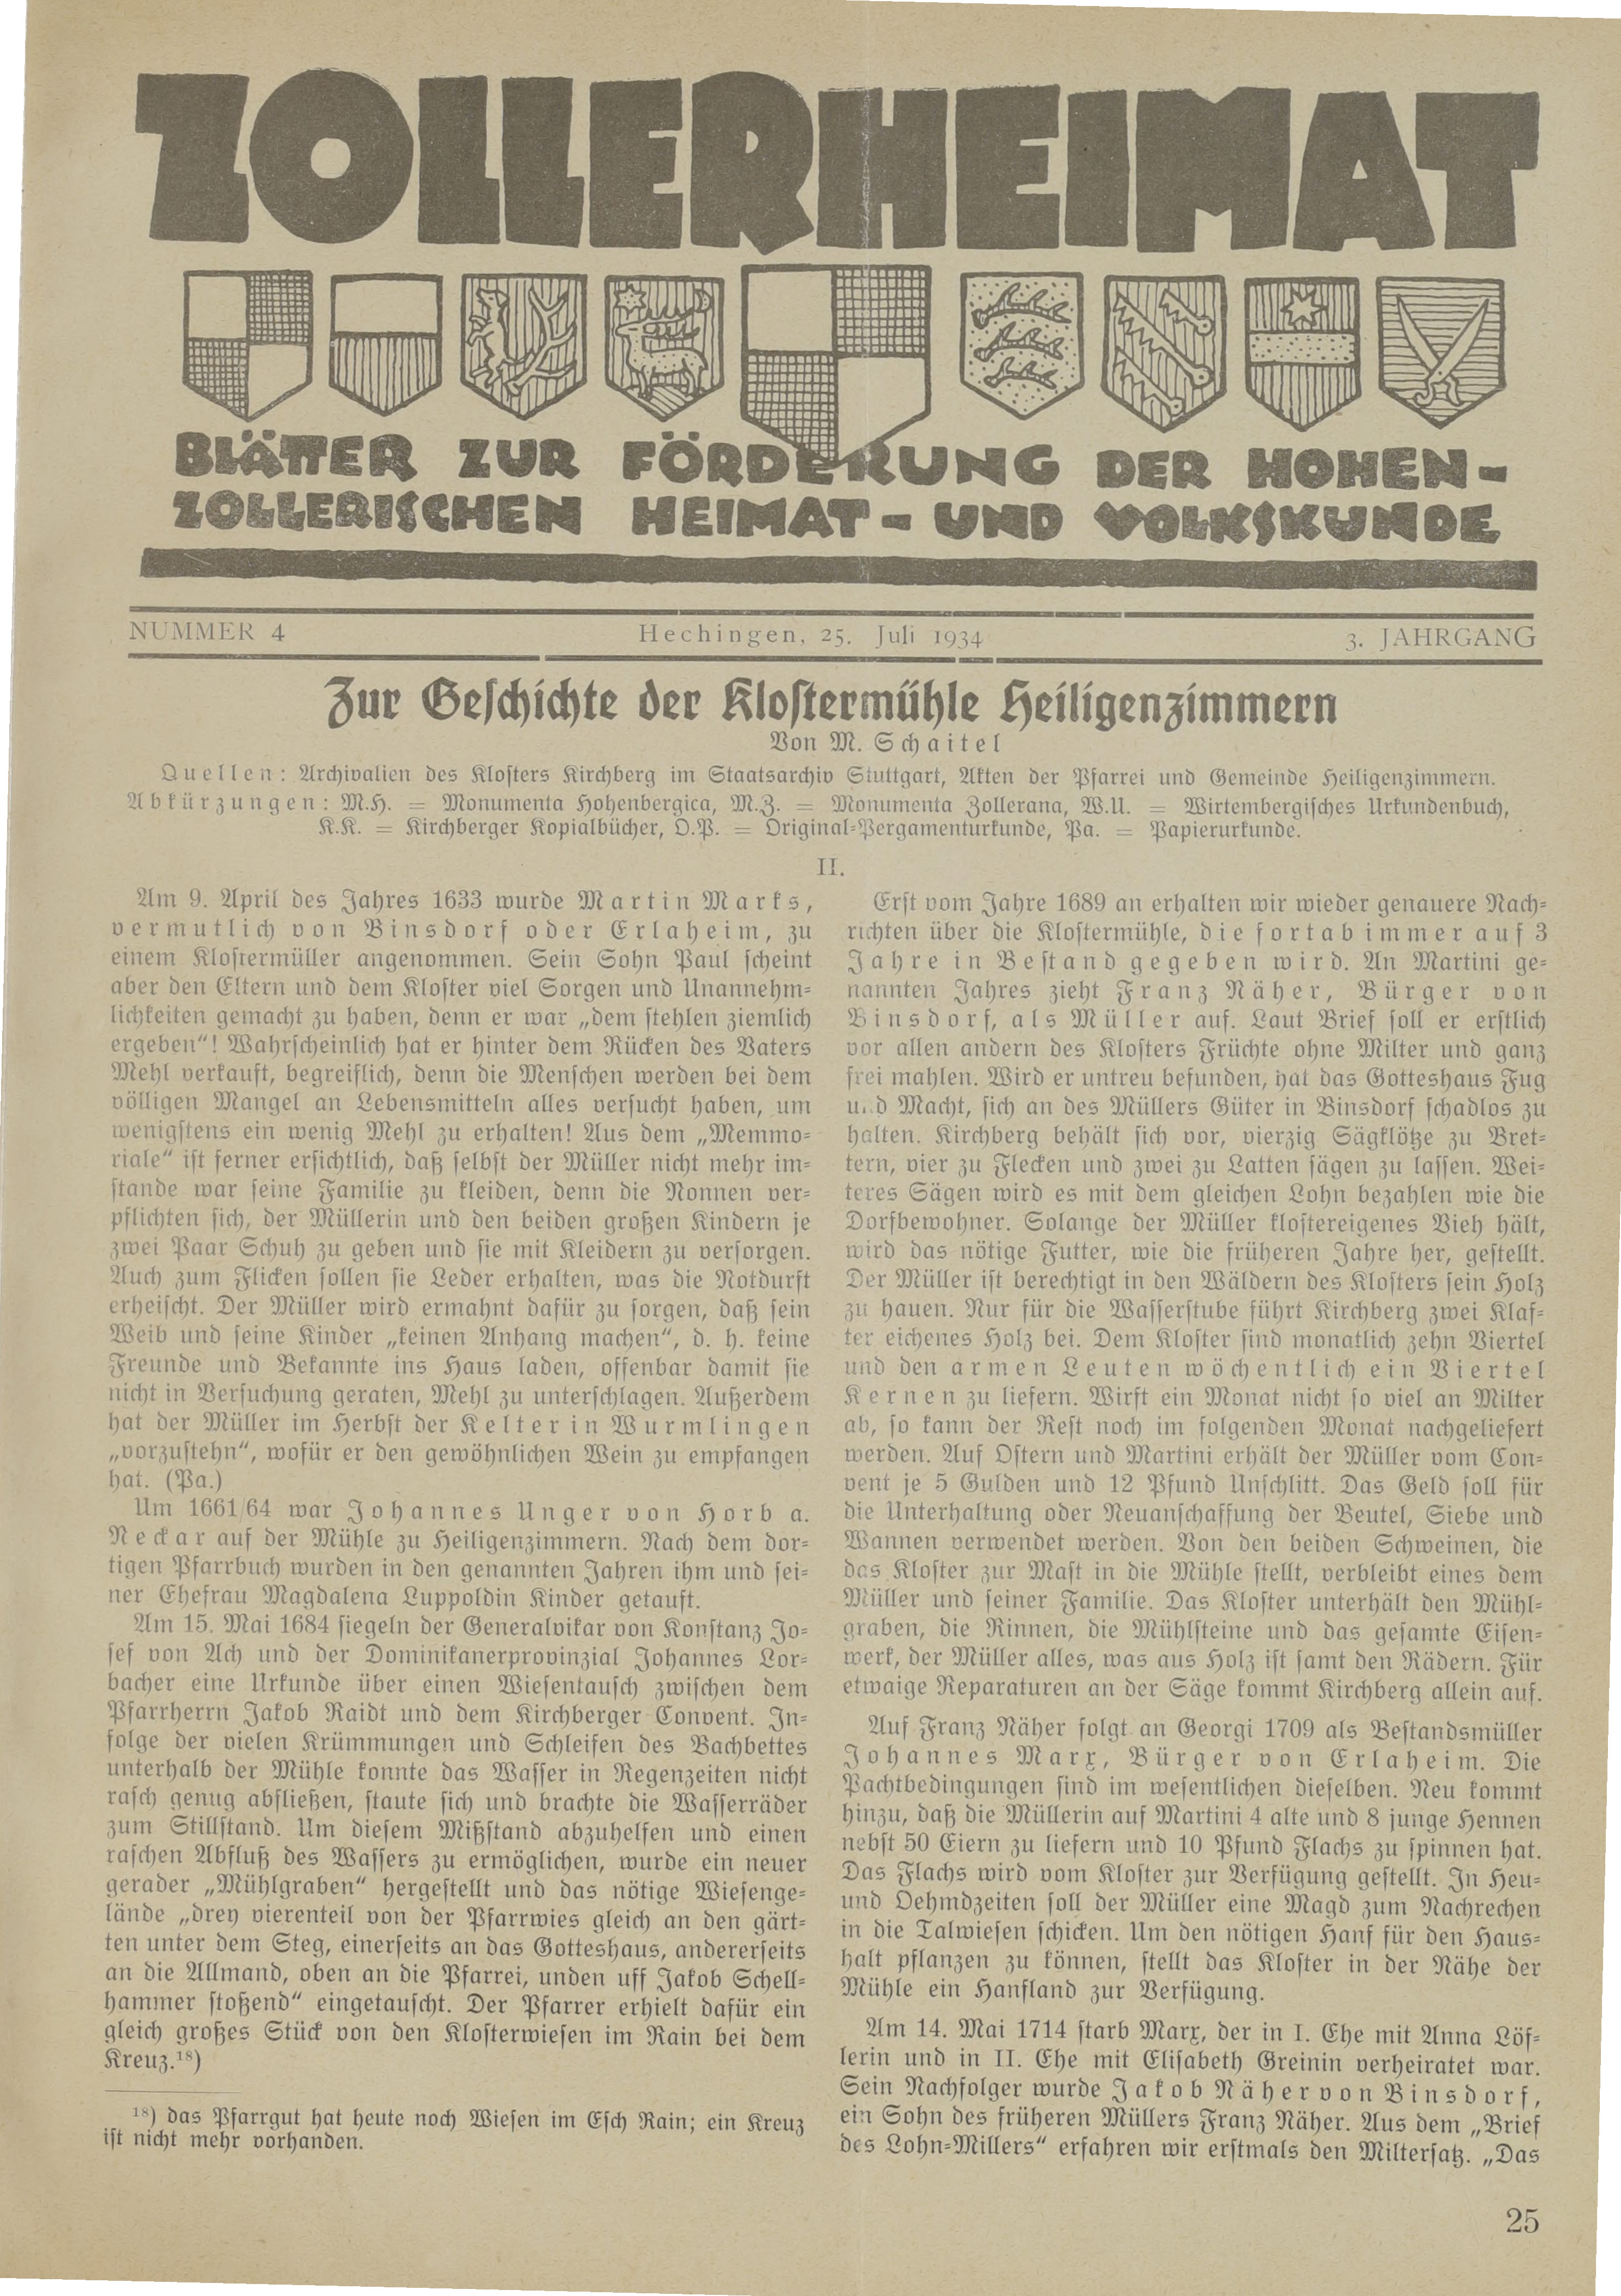                     Ansehen Bd. 3 Nr. 4 (1934): Zollerheimat
                